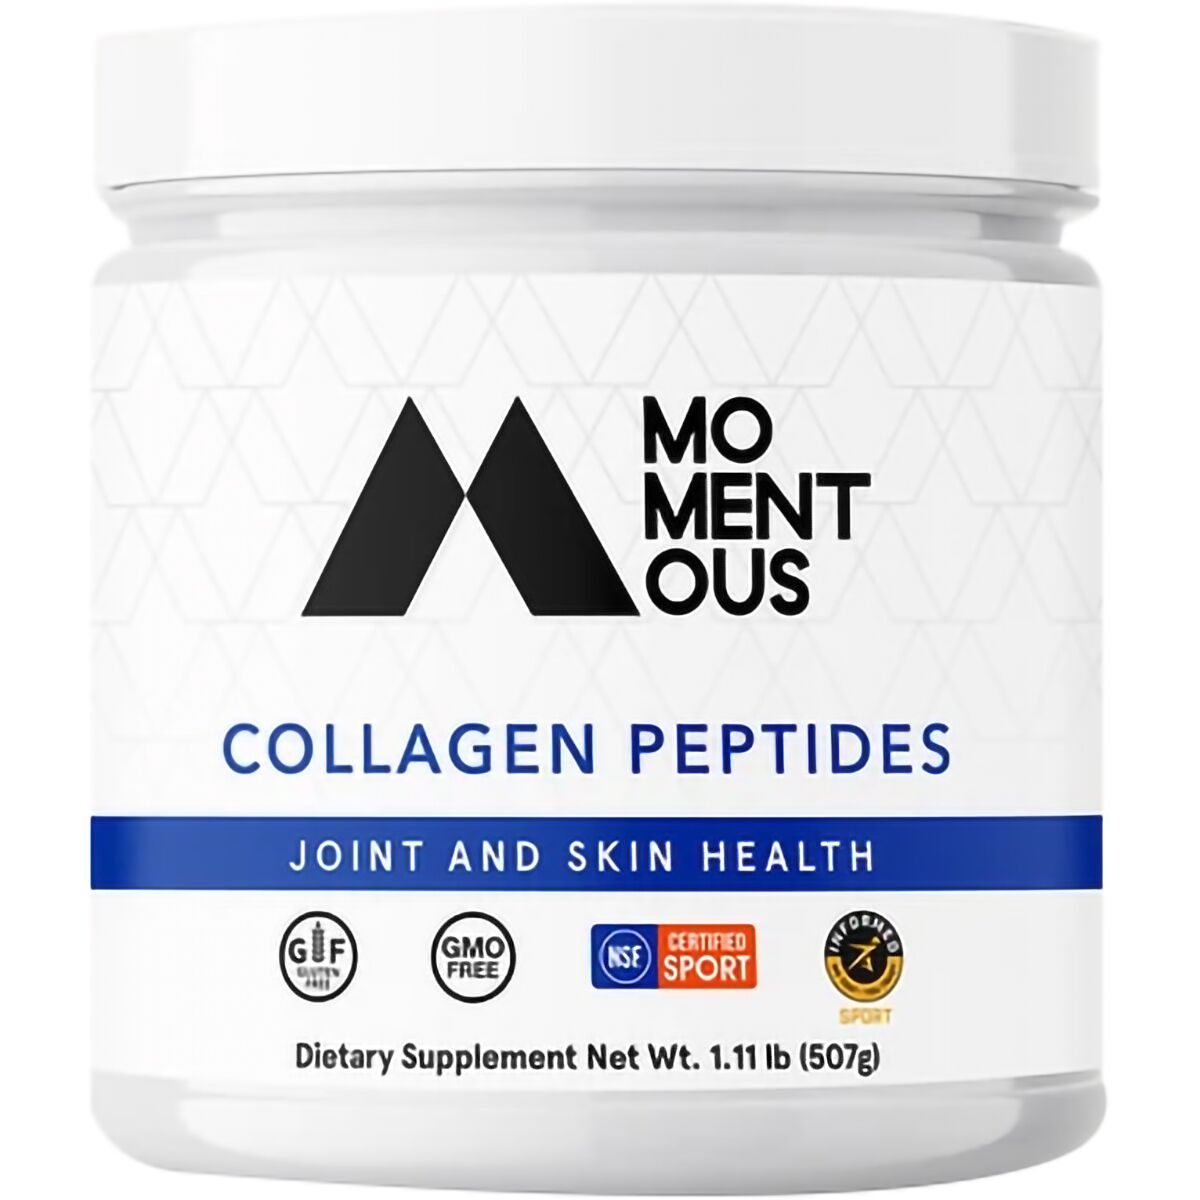 Momentous Collagen Peptides